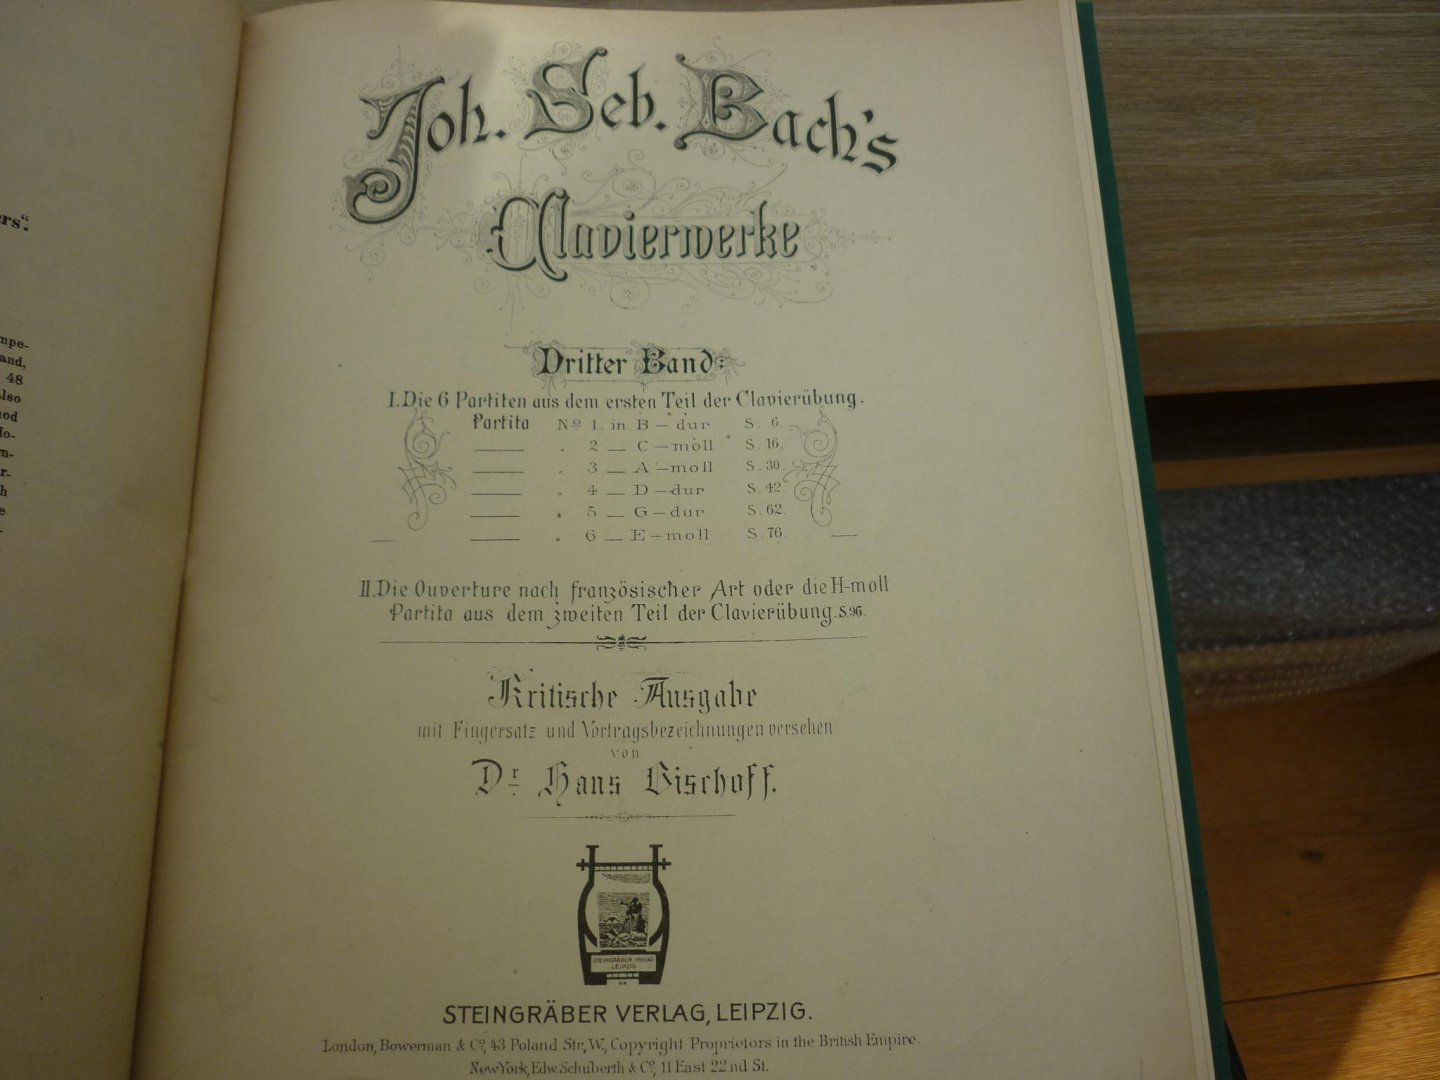 Bach; J. S. (1685-1750) - Klavierwerke; Band II / Band III; Krititsche Ausgabe mit Fingersatz und Vortragsbezeichnungen versehen von Dr. Hans Bischoff (Berlin, Mai 1881); Originele uitgave uit 1881/82